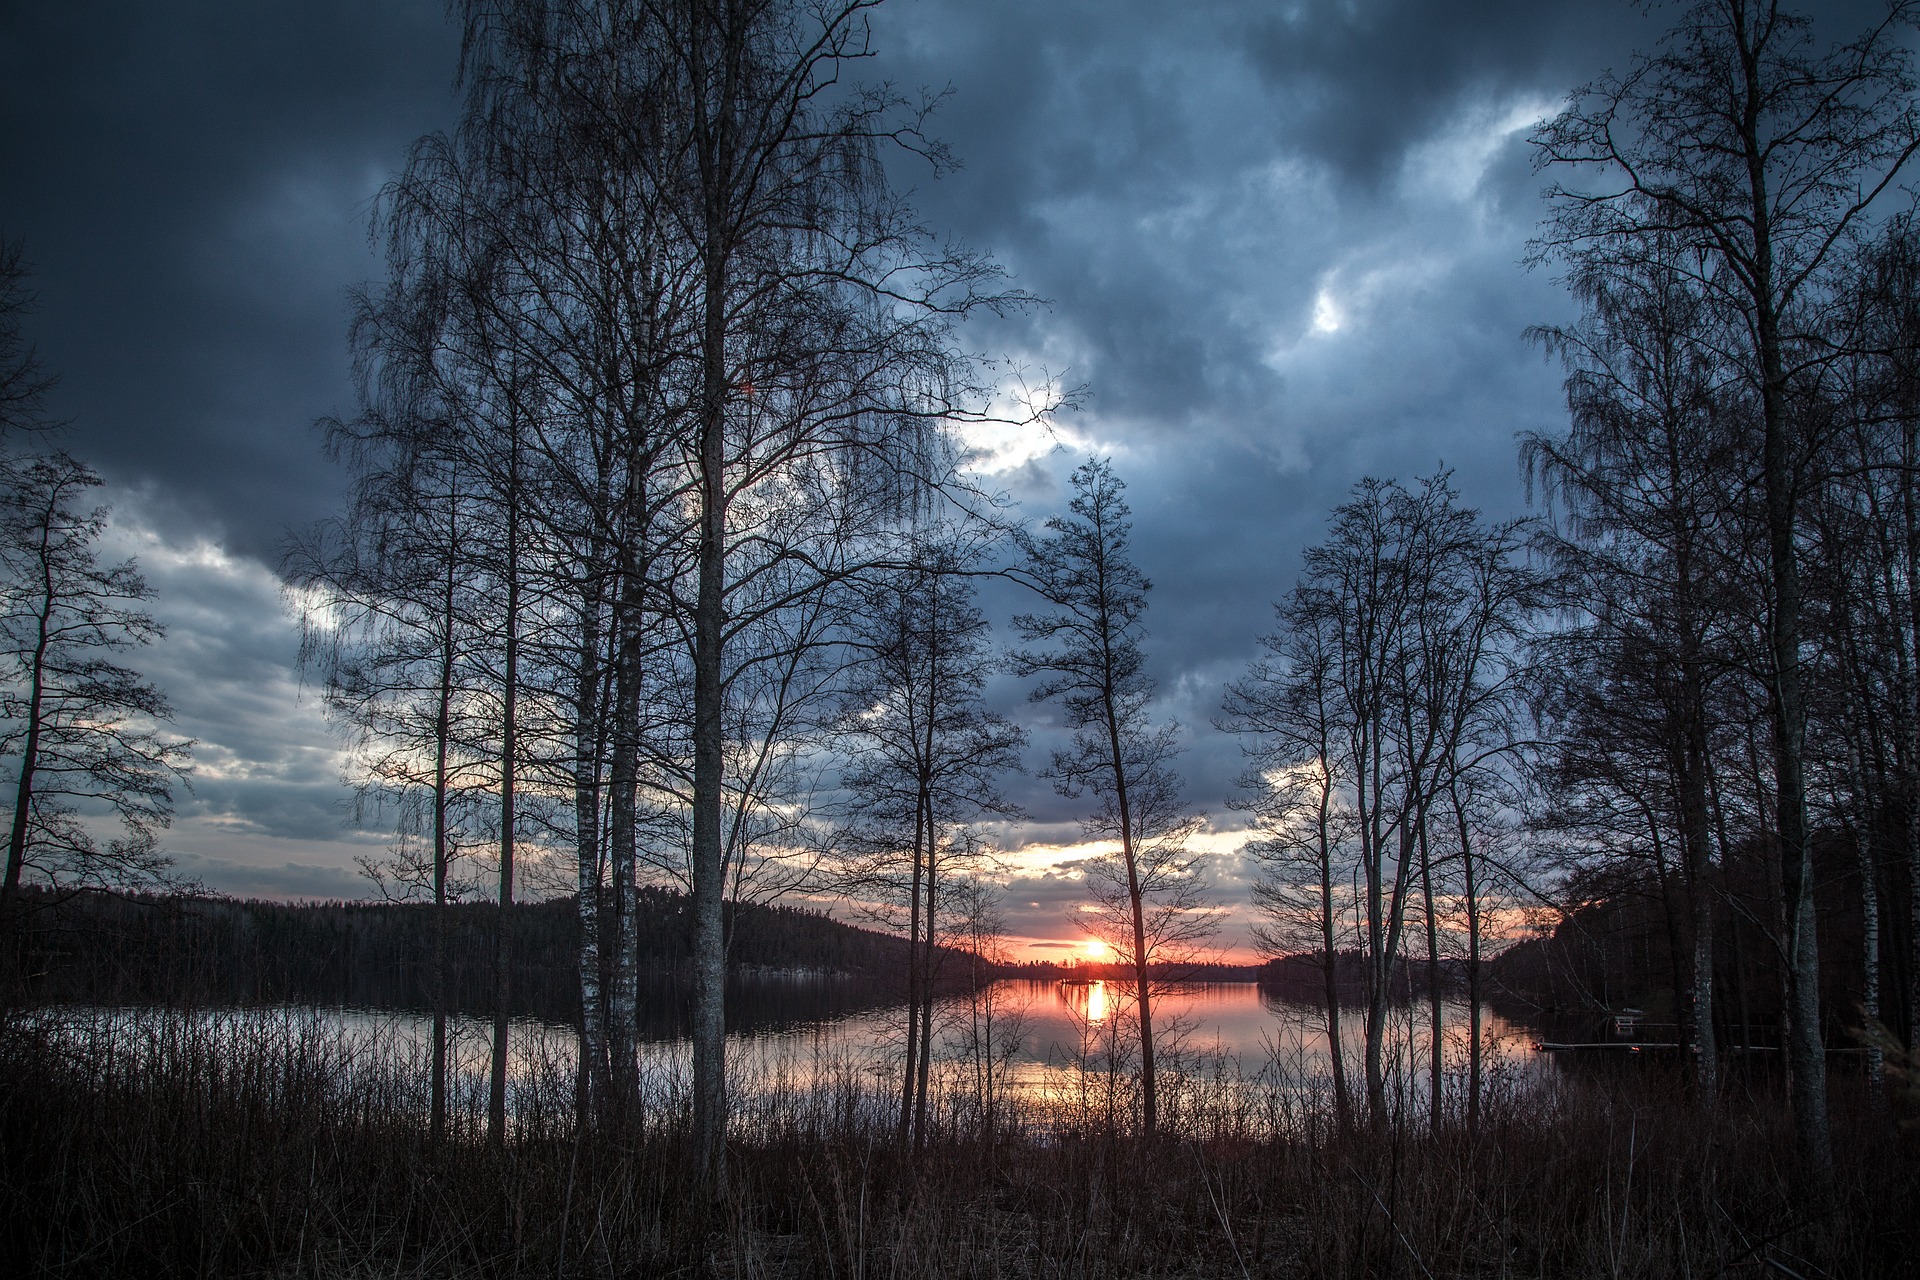 Finnland, Skandinavien, Bild von See mit Ufer, untergehende rote Sonne. Reise-Trends 2023